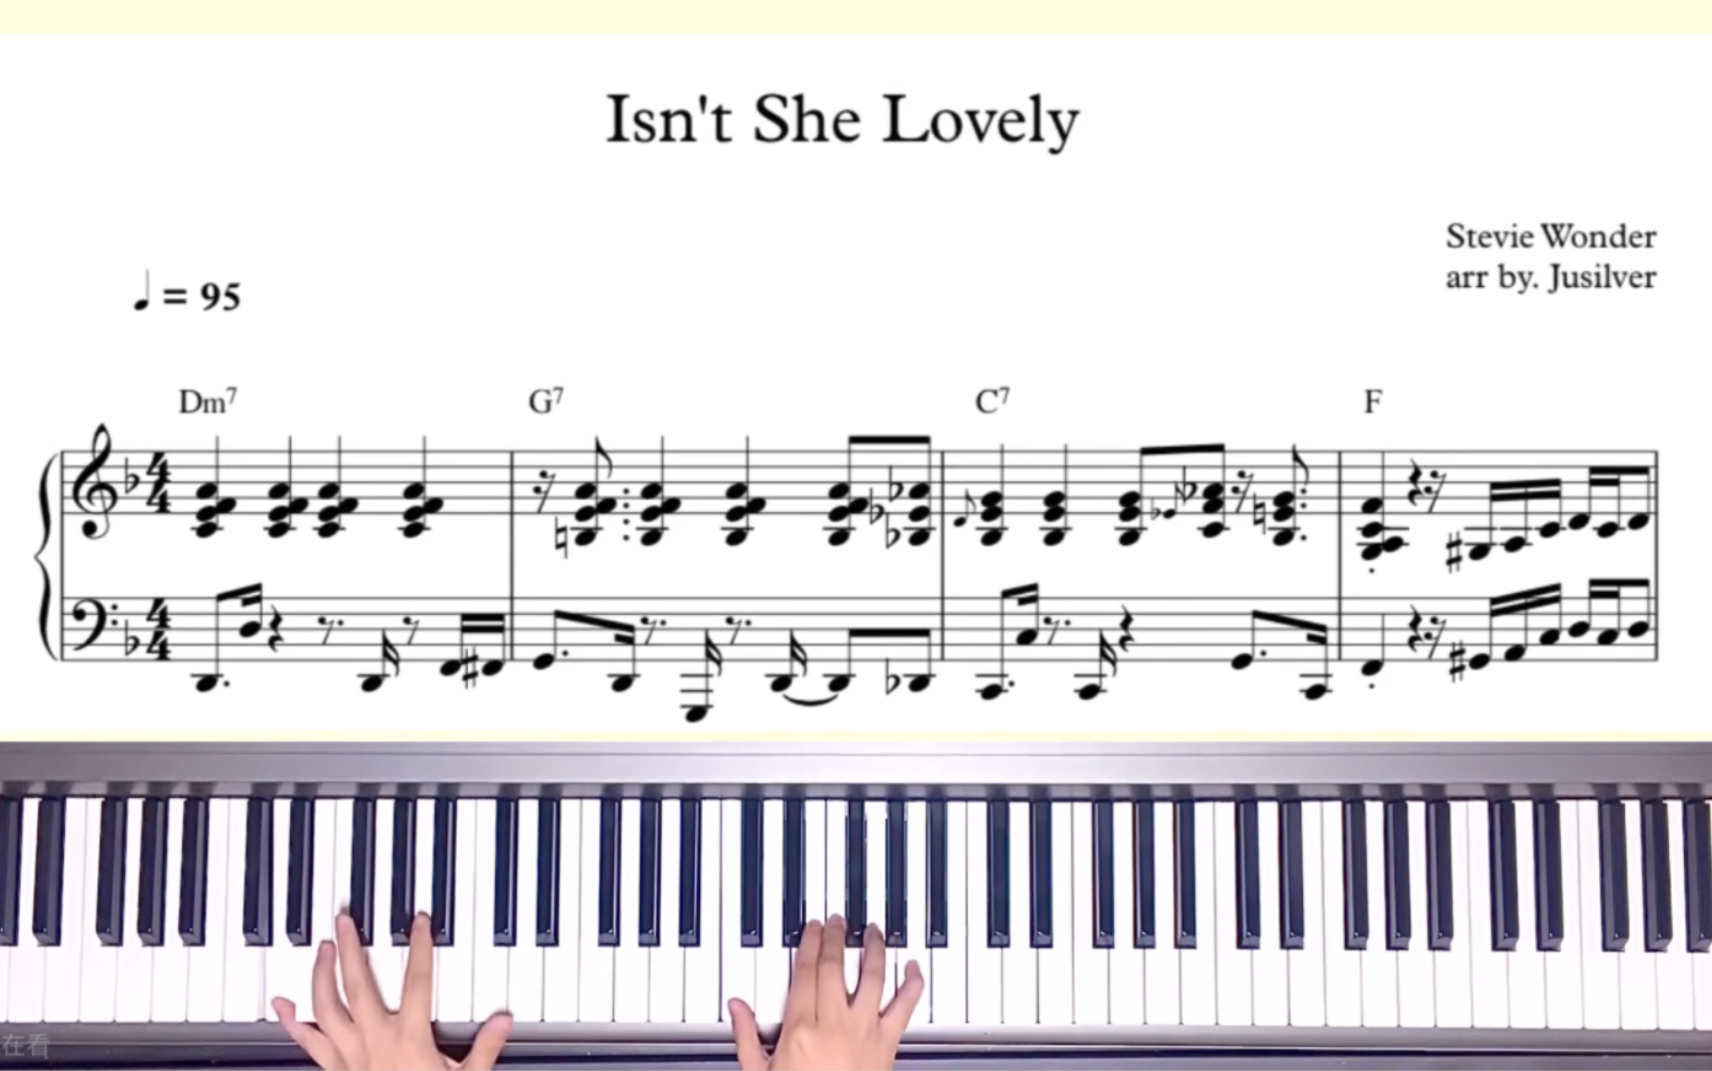 【Isn't She Lovely/钢琴谱】Stevie Wonder (Funk/Jazz piano) by.Jusilve